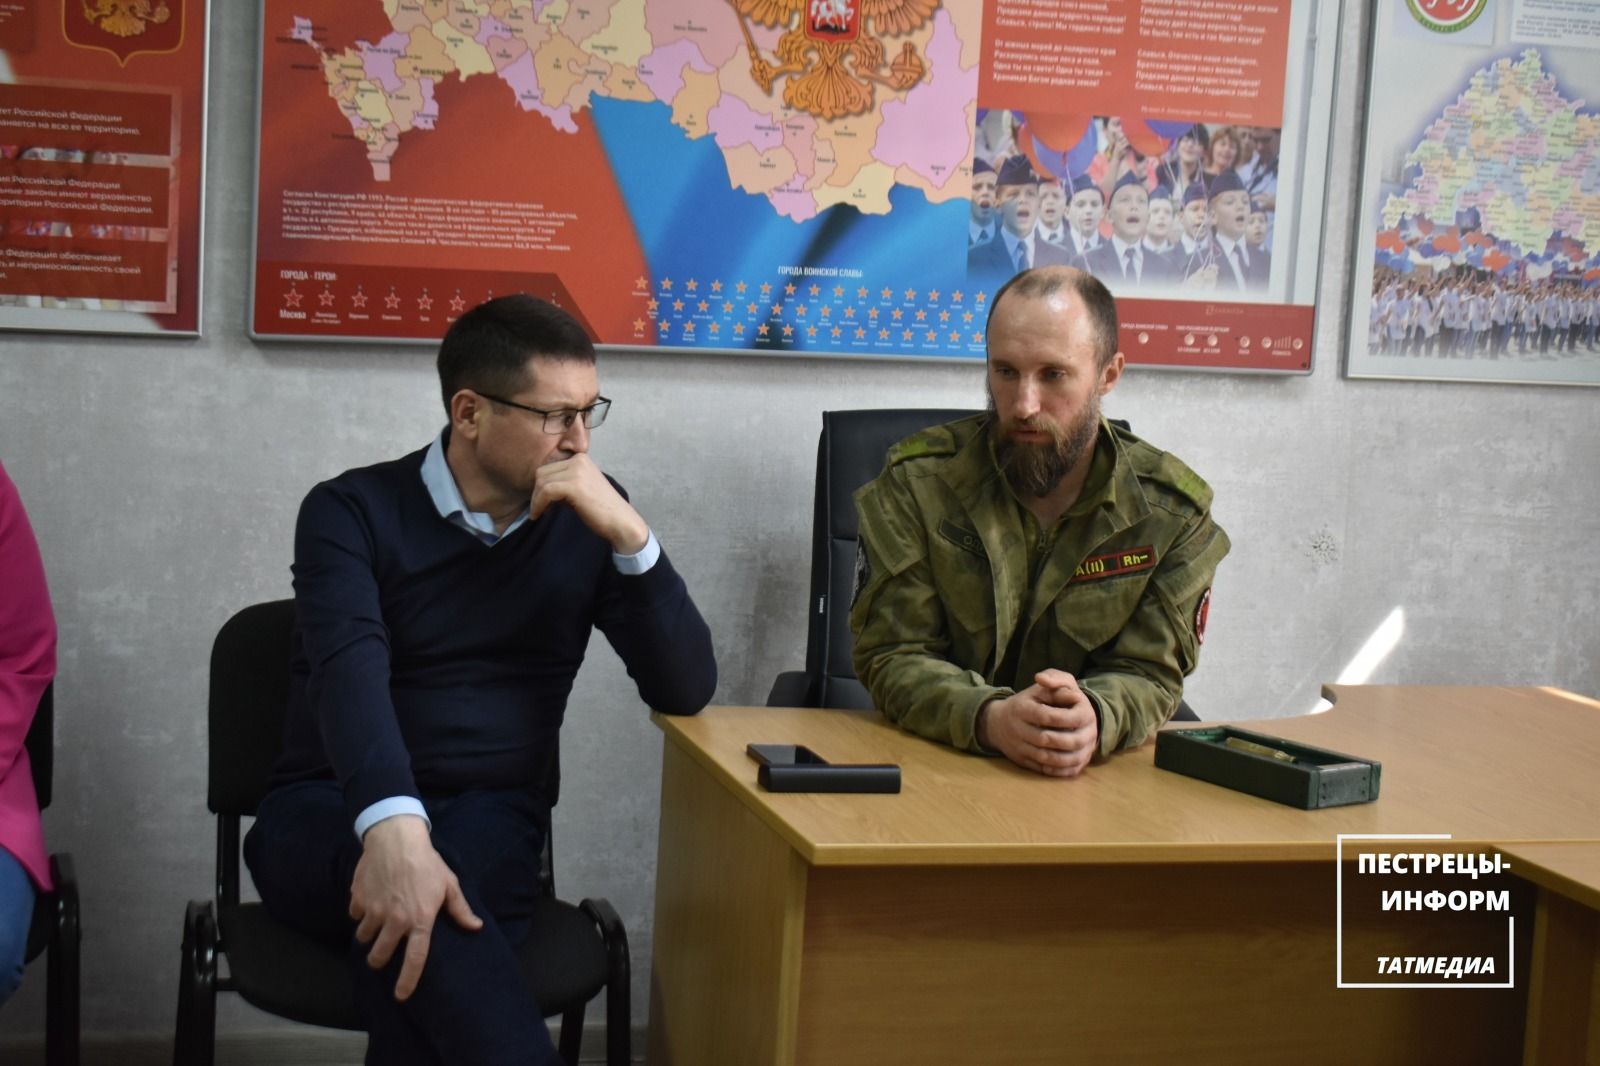 Военнослужащий из Пестречинского района встретился с молодежью